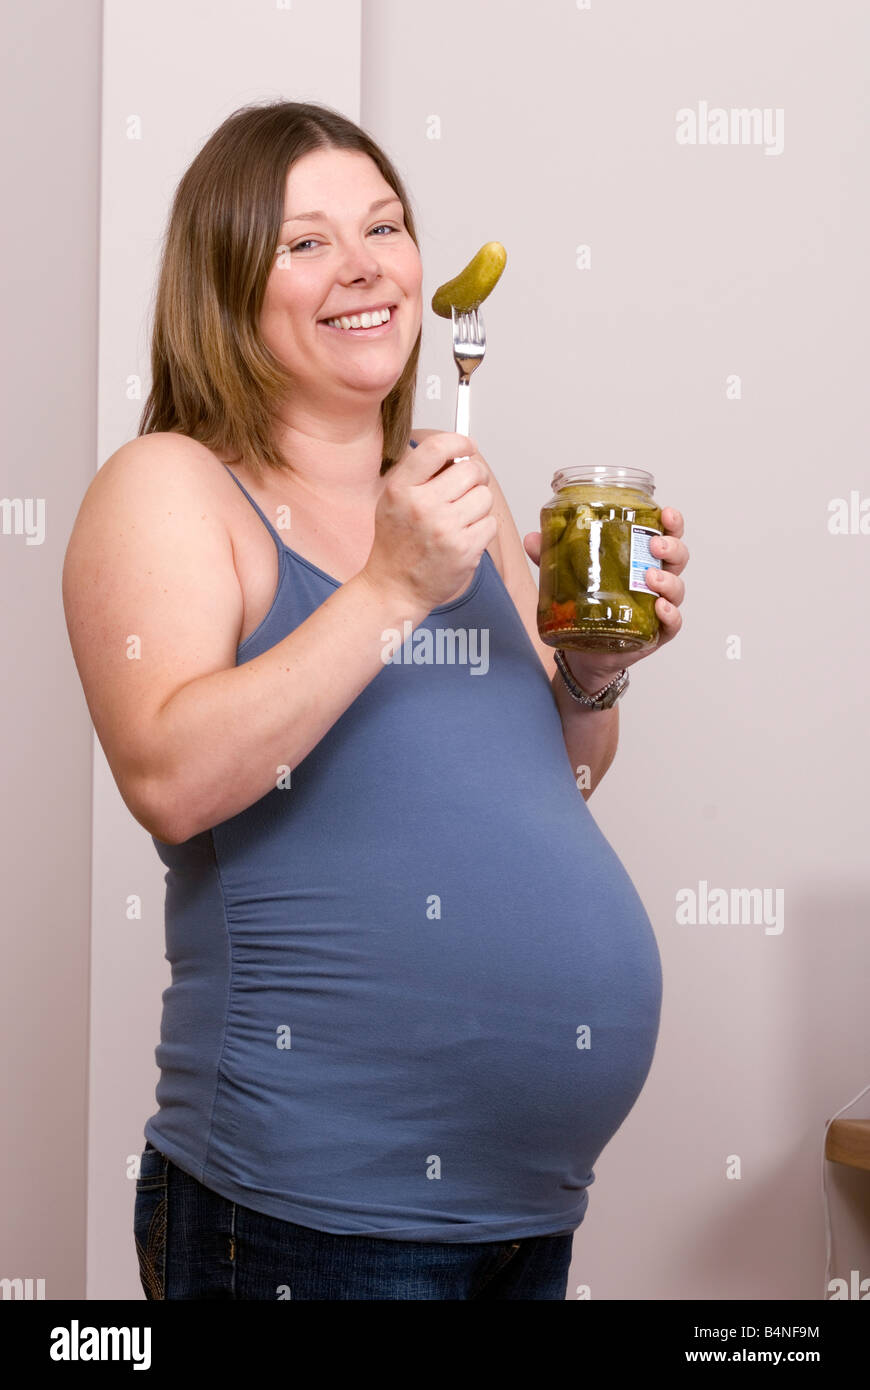 Une femme enceinte mange un cornichon Photo Stock - Alamy